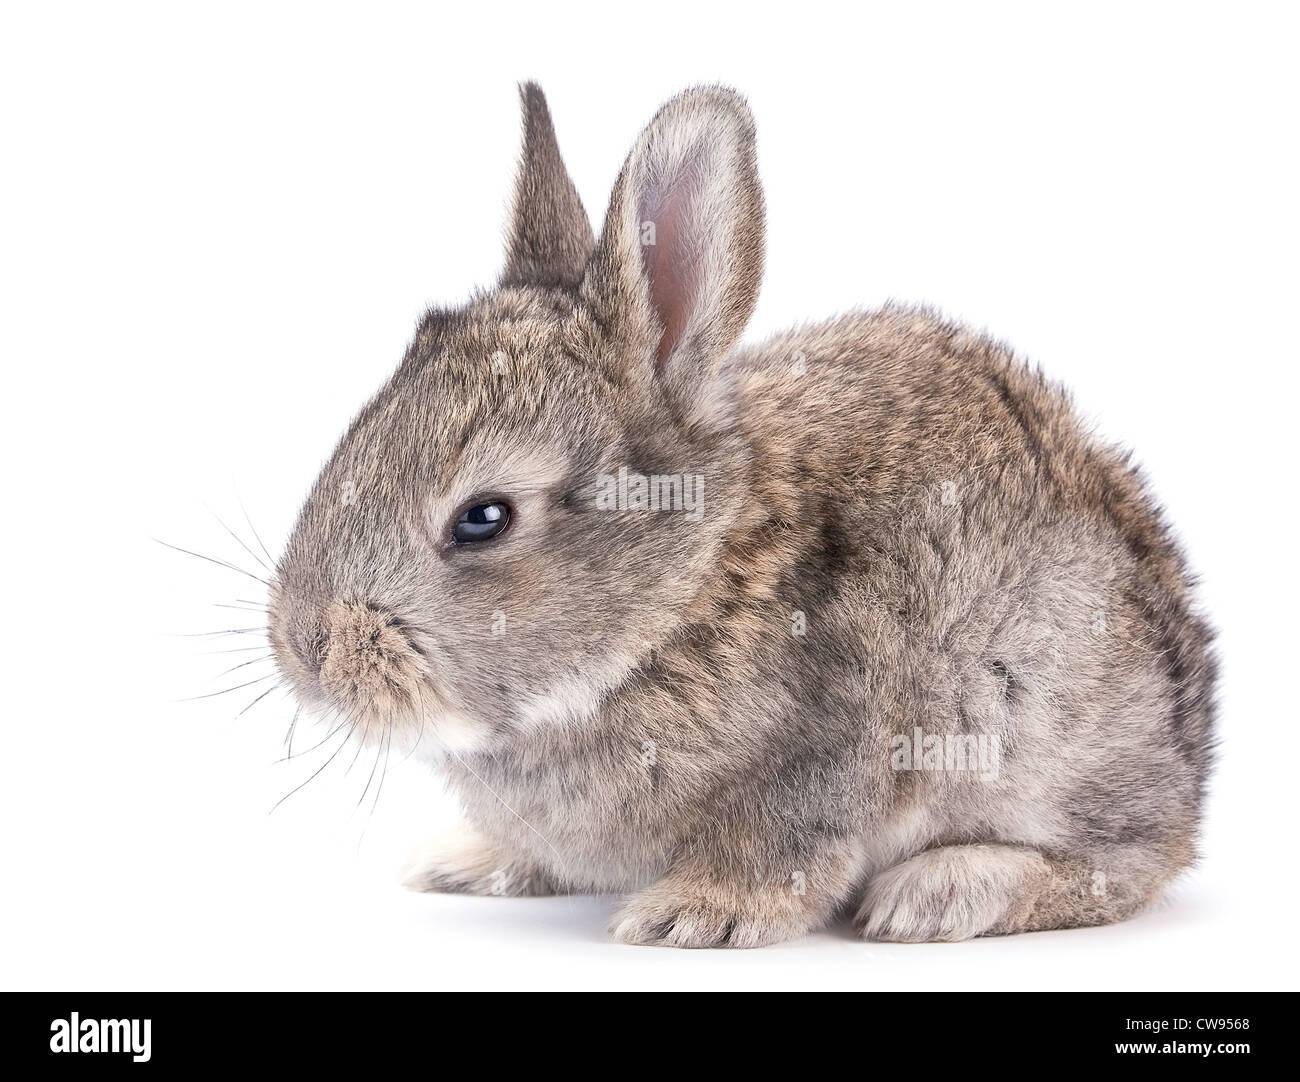 Baby rabbit farm animal closeup on white background Stock Photo